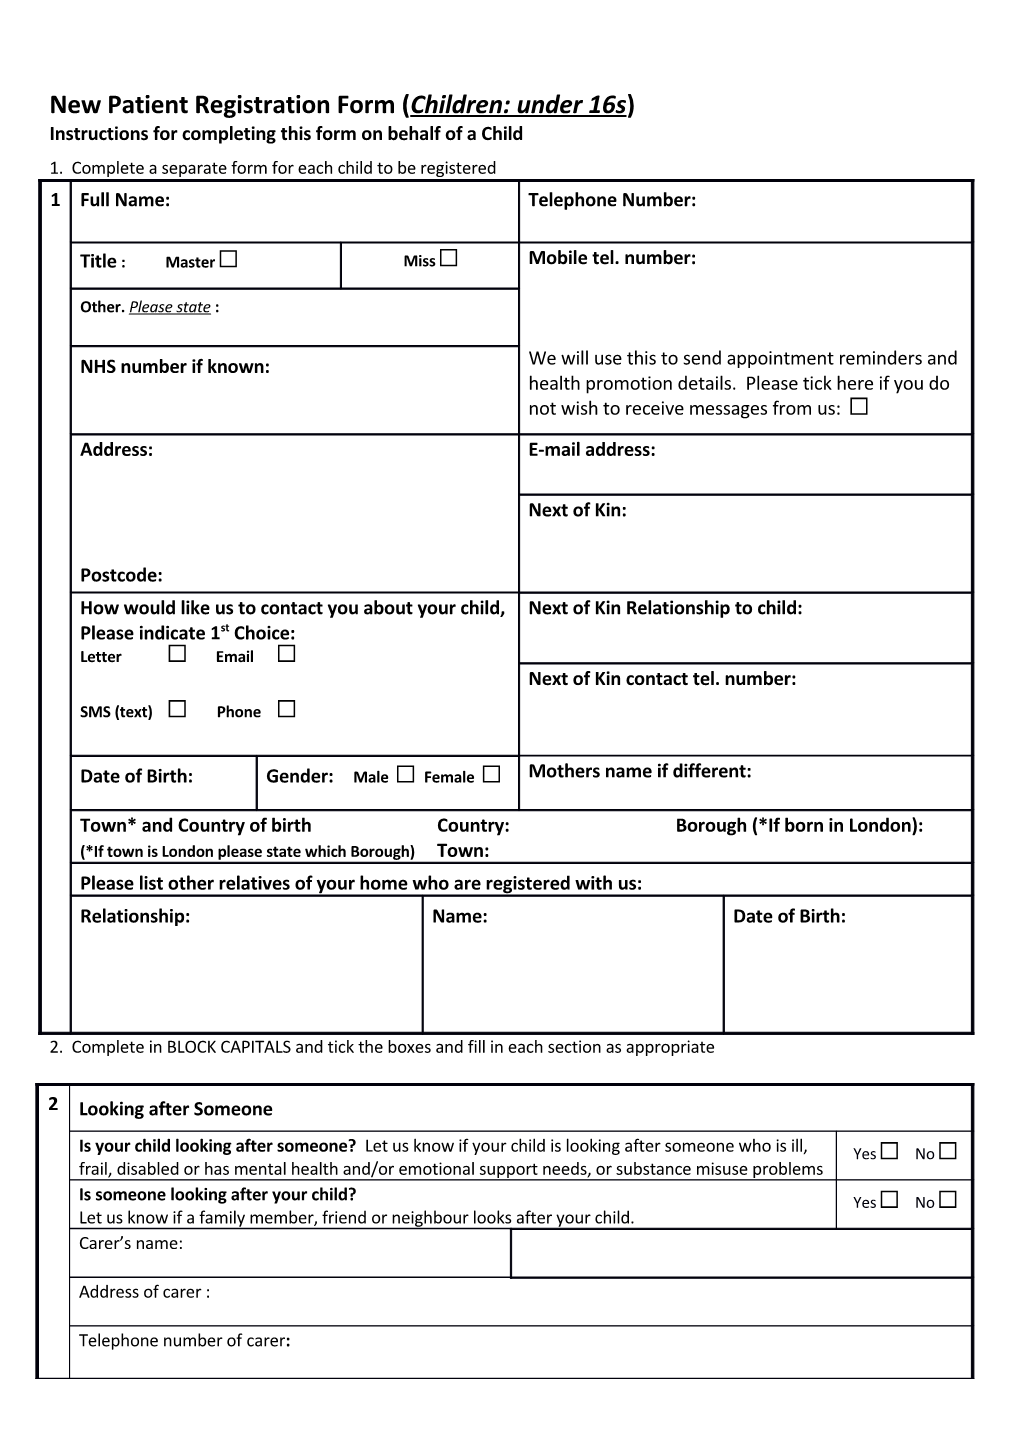 New Patient Registration Form (Children: Under 16S)